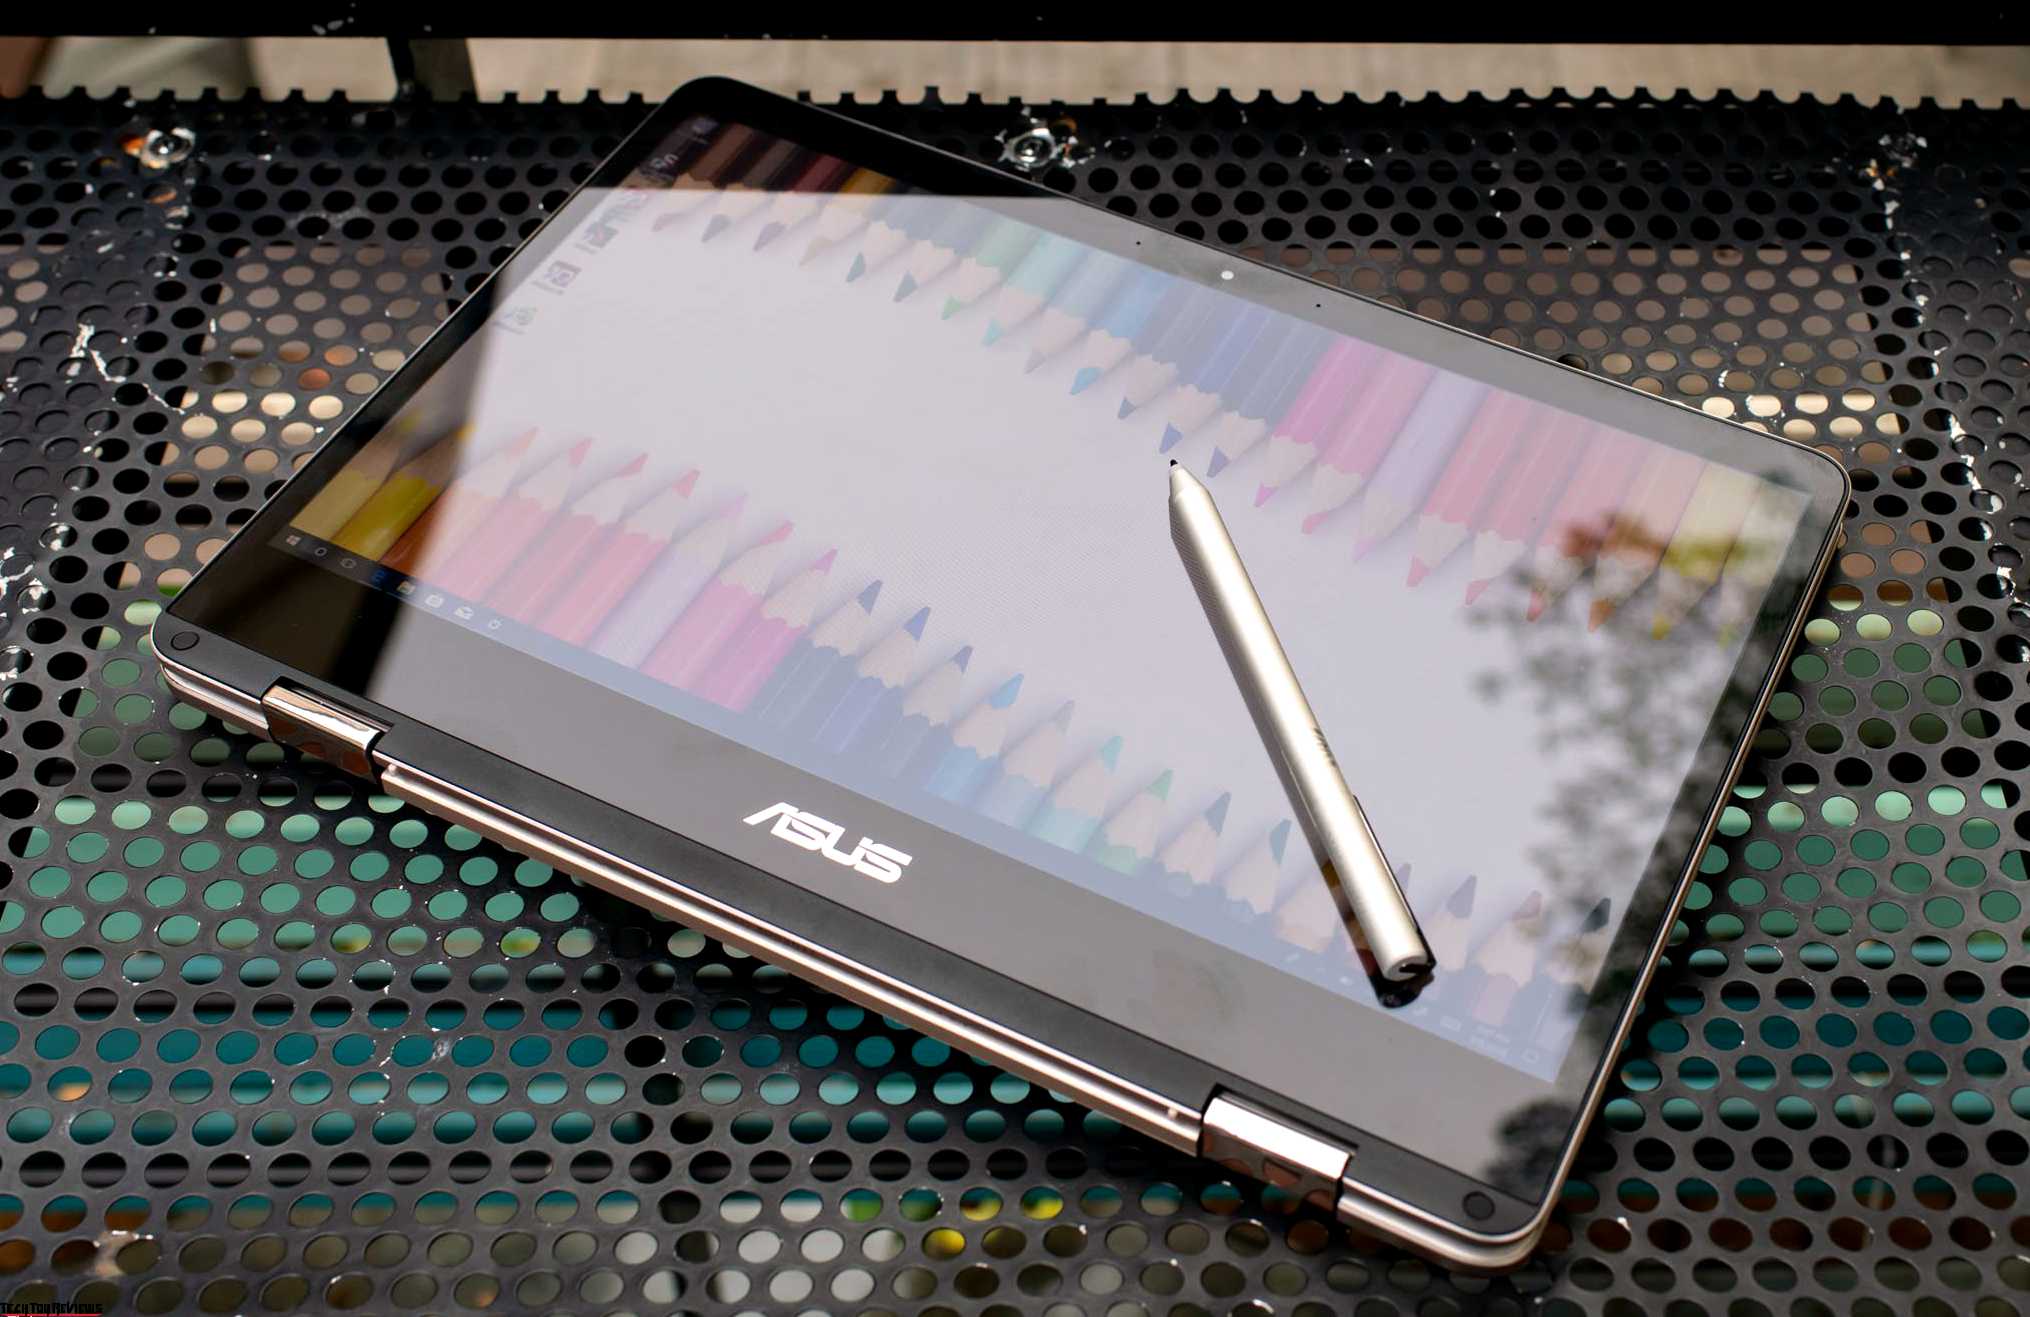 Asus ZenBook Flip UX461UA Review